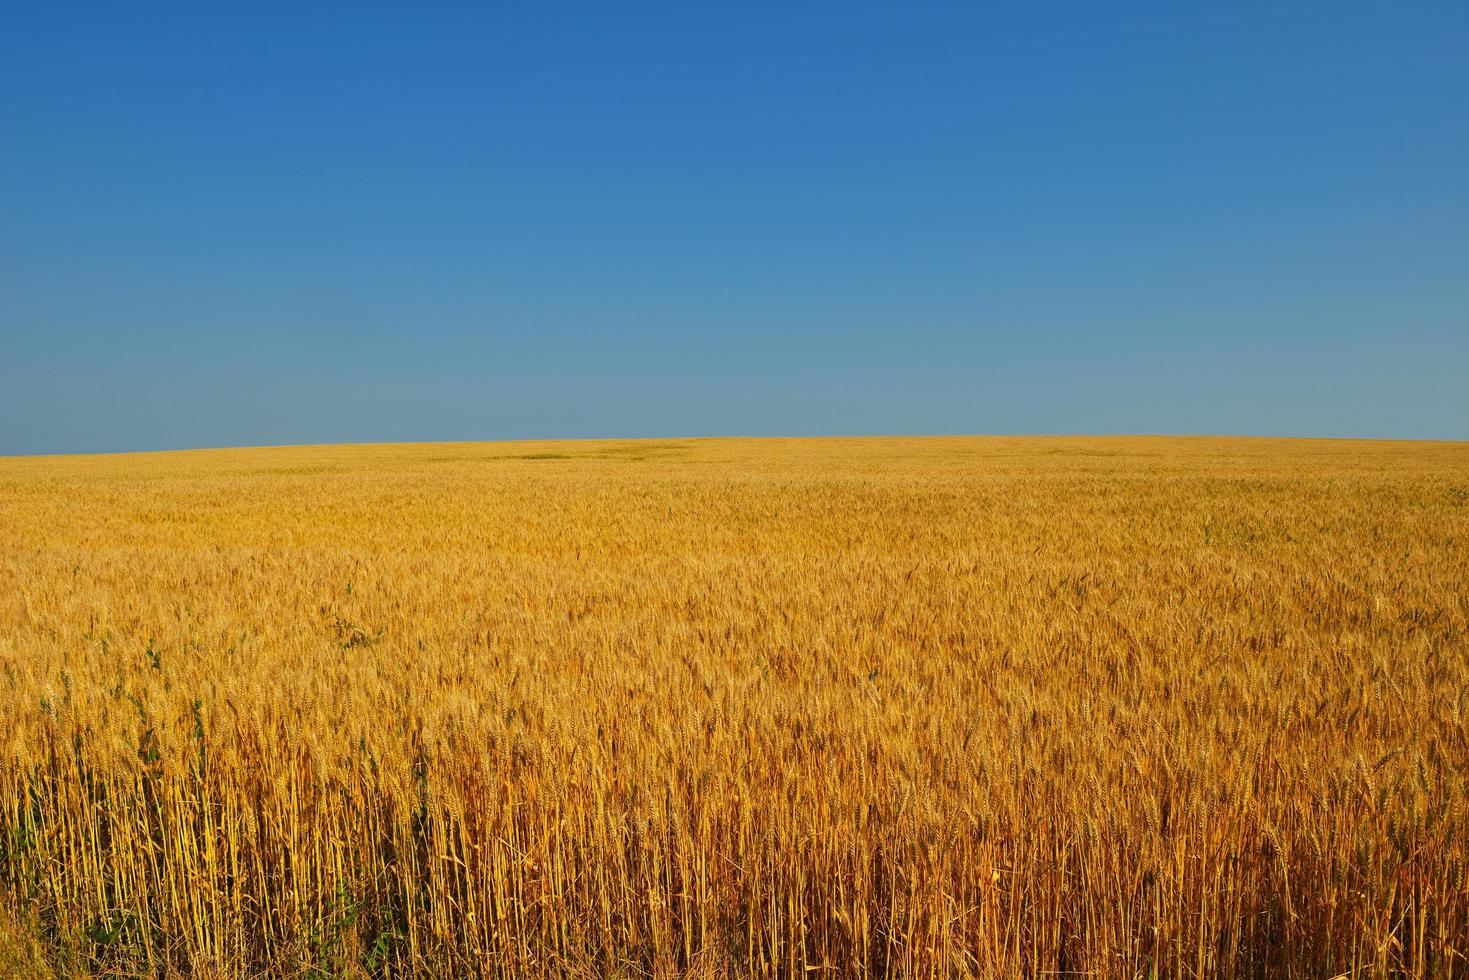 champ de blé avec un ciel bleu en arrière-plan photo